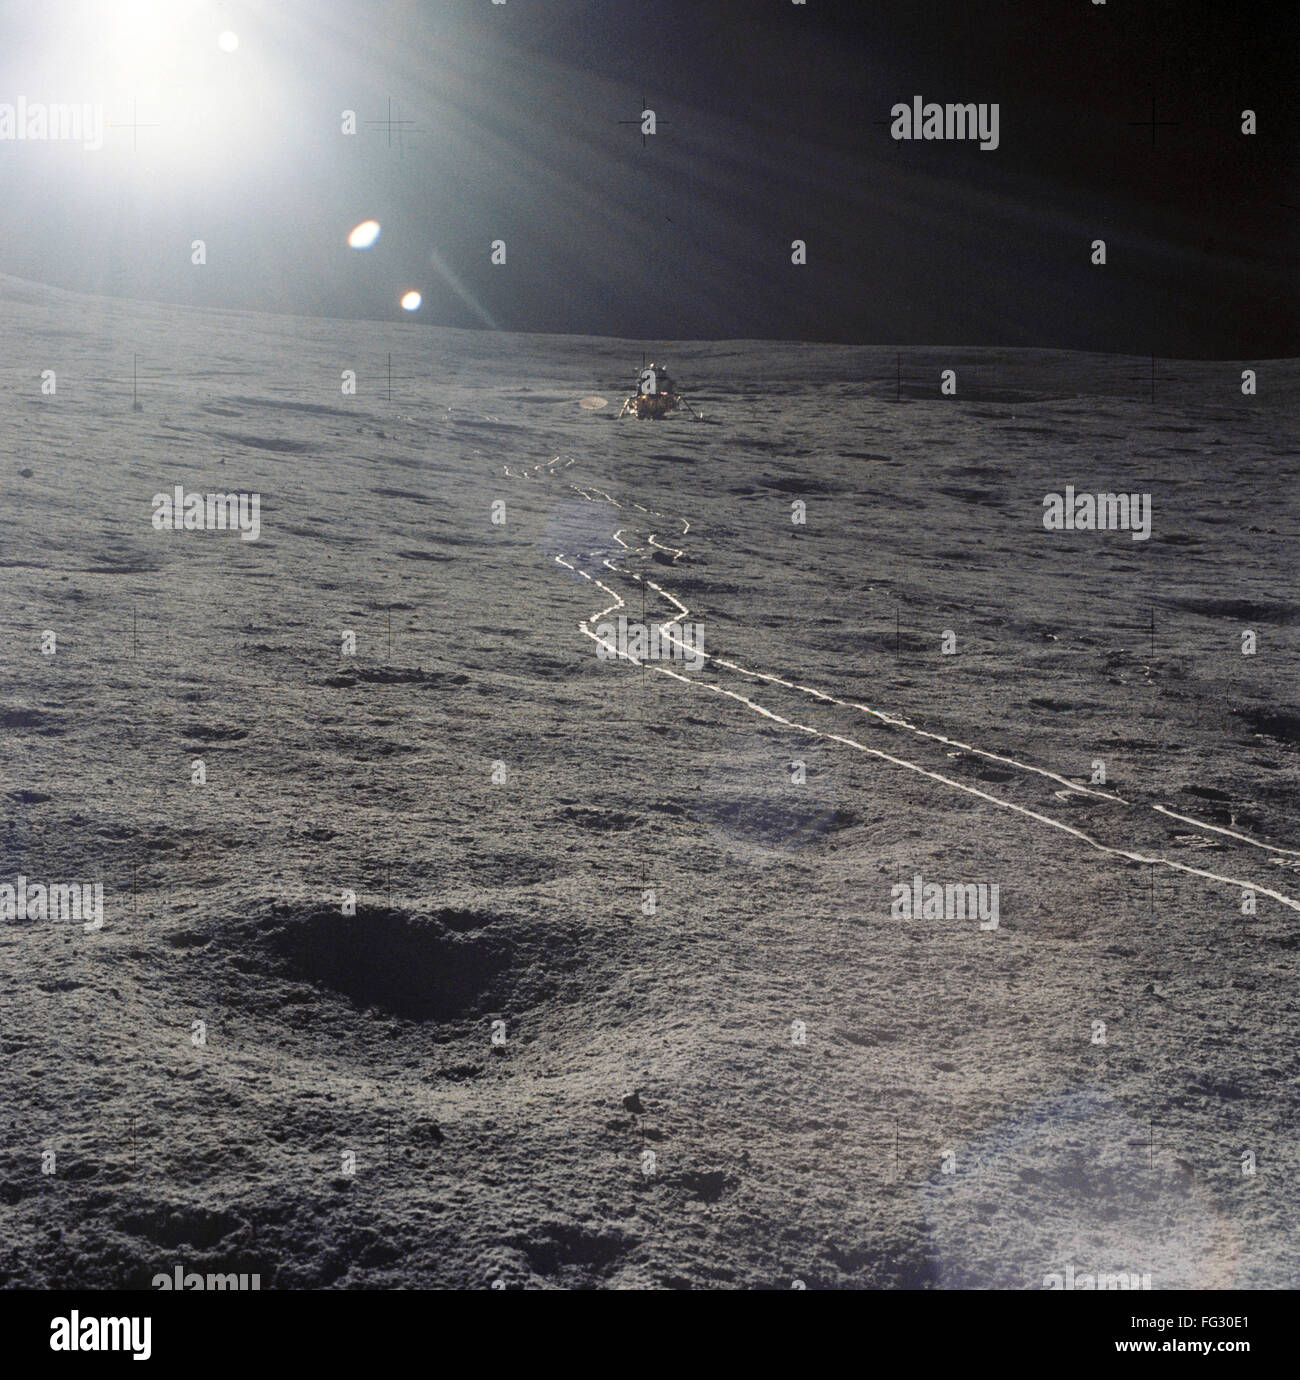 Apolo 14: La Luna, 1971. /Nel Módulo Lunar del Apolo 14 y pistas en la luna. Fotografía, febrero de 1971. Foto de stock